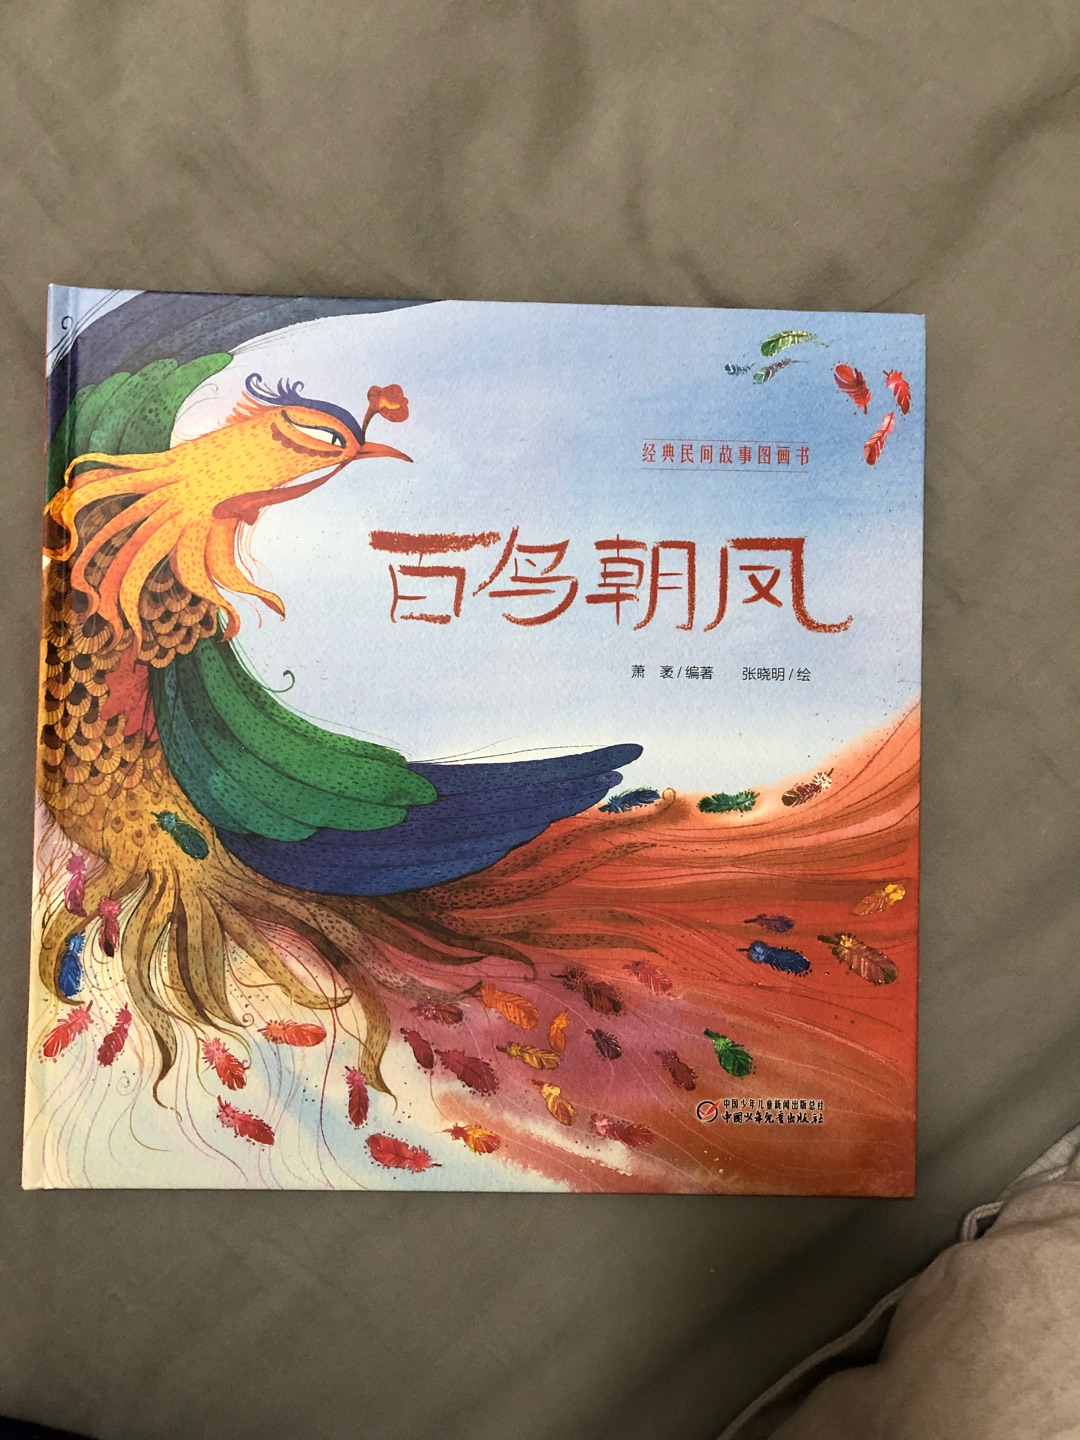 传统故事，很美，希望多一些这样的绘本，让中国的孩子了解中国的故事